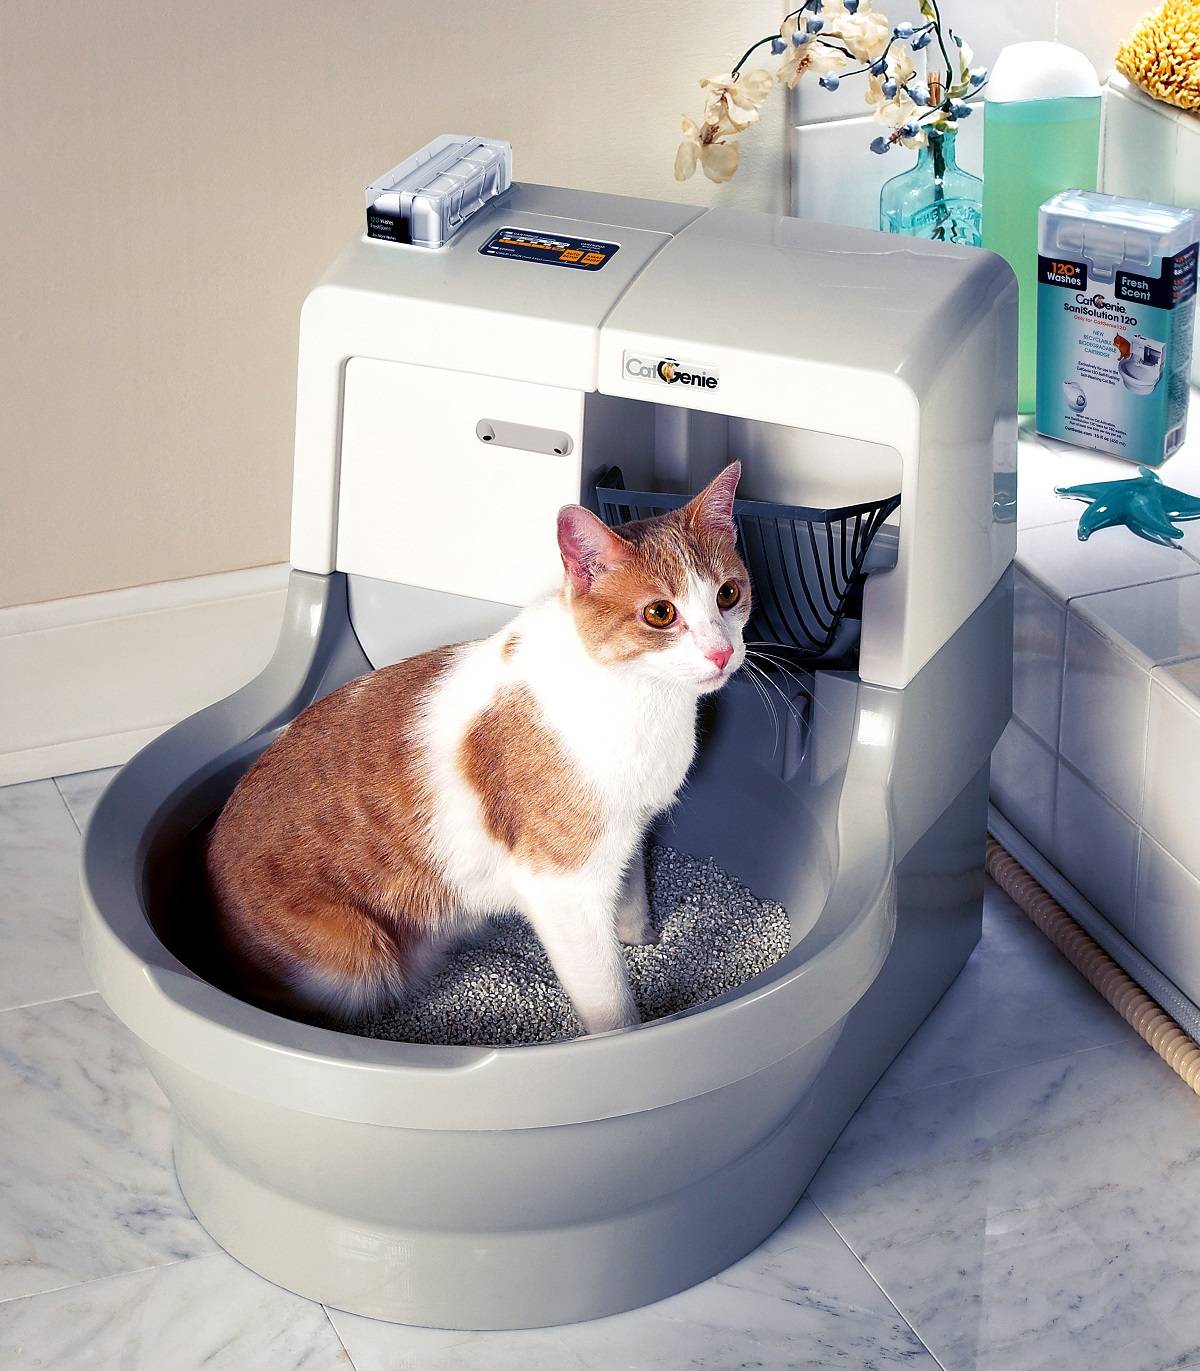 Обзор автоматических кошачьих туалетов: kopfgescheit, catgenie 120 и других